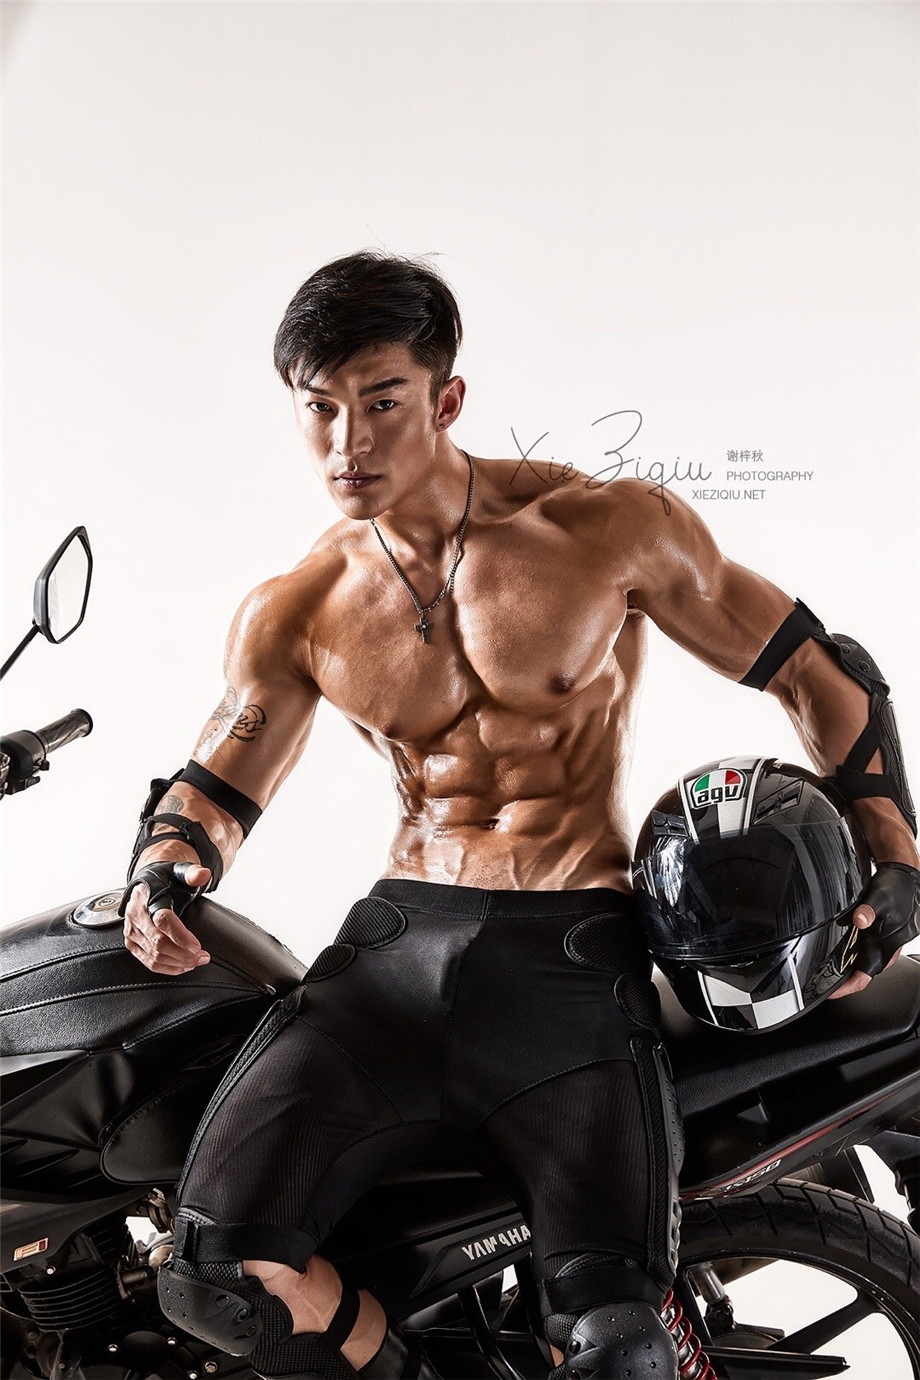 性感的欧洲半裸肌肉男模硬汉帅哥跟摩托机车的合影照片